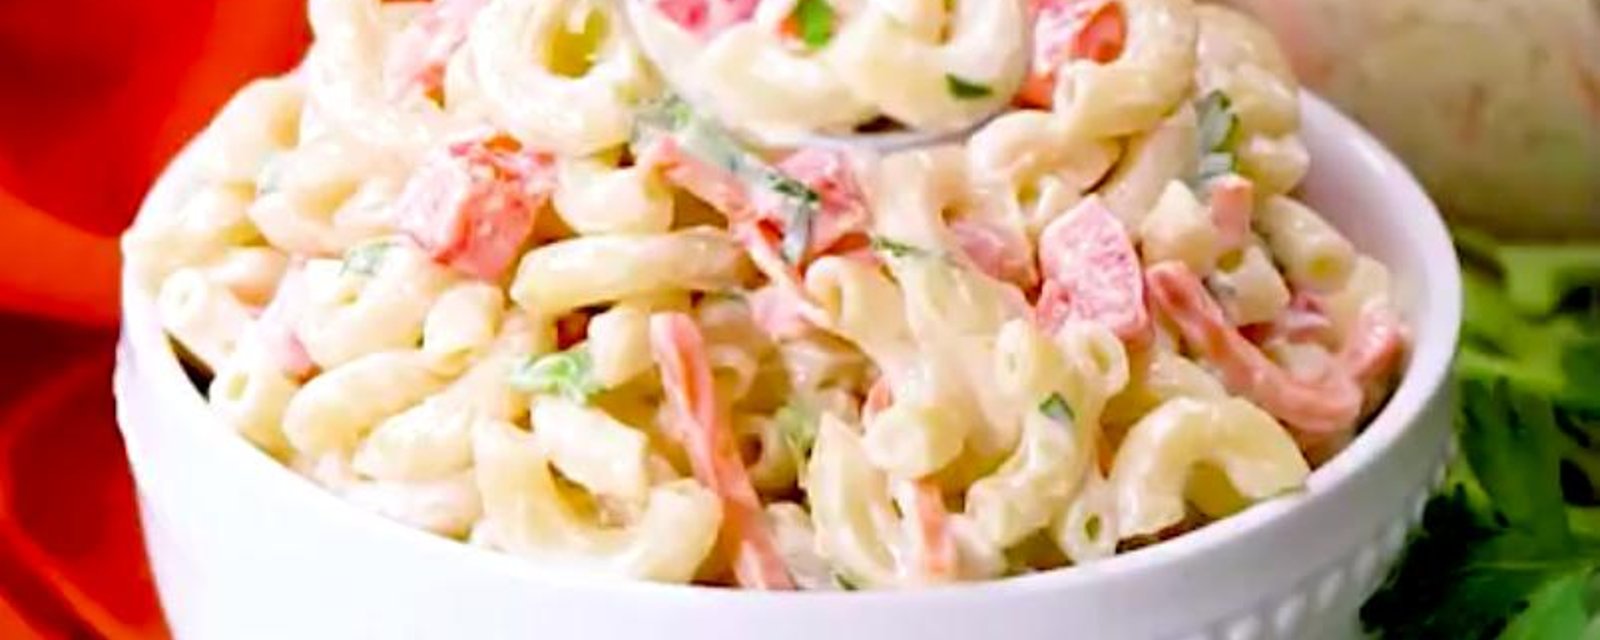 La meilleure salade froide au macaroni que vous aurez mangée de toute votre vie